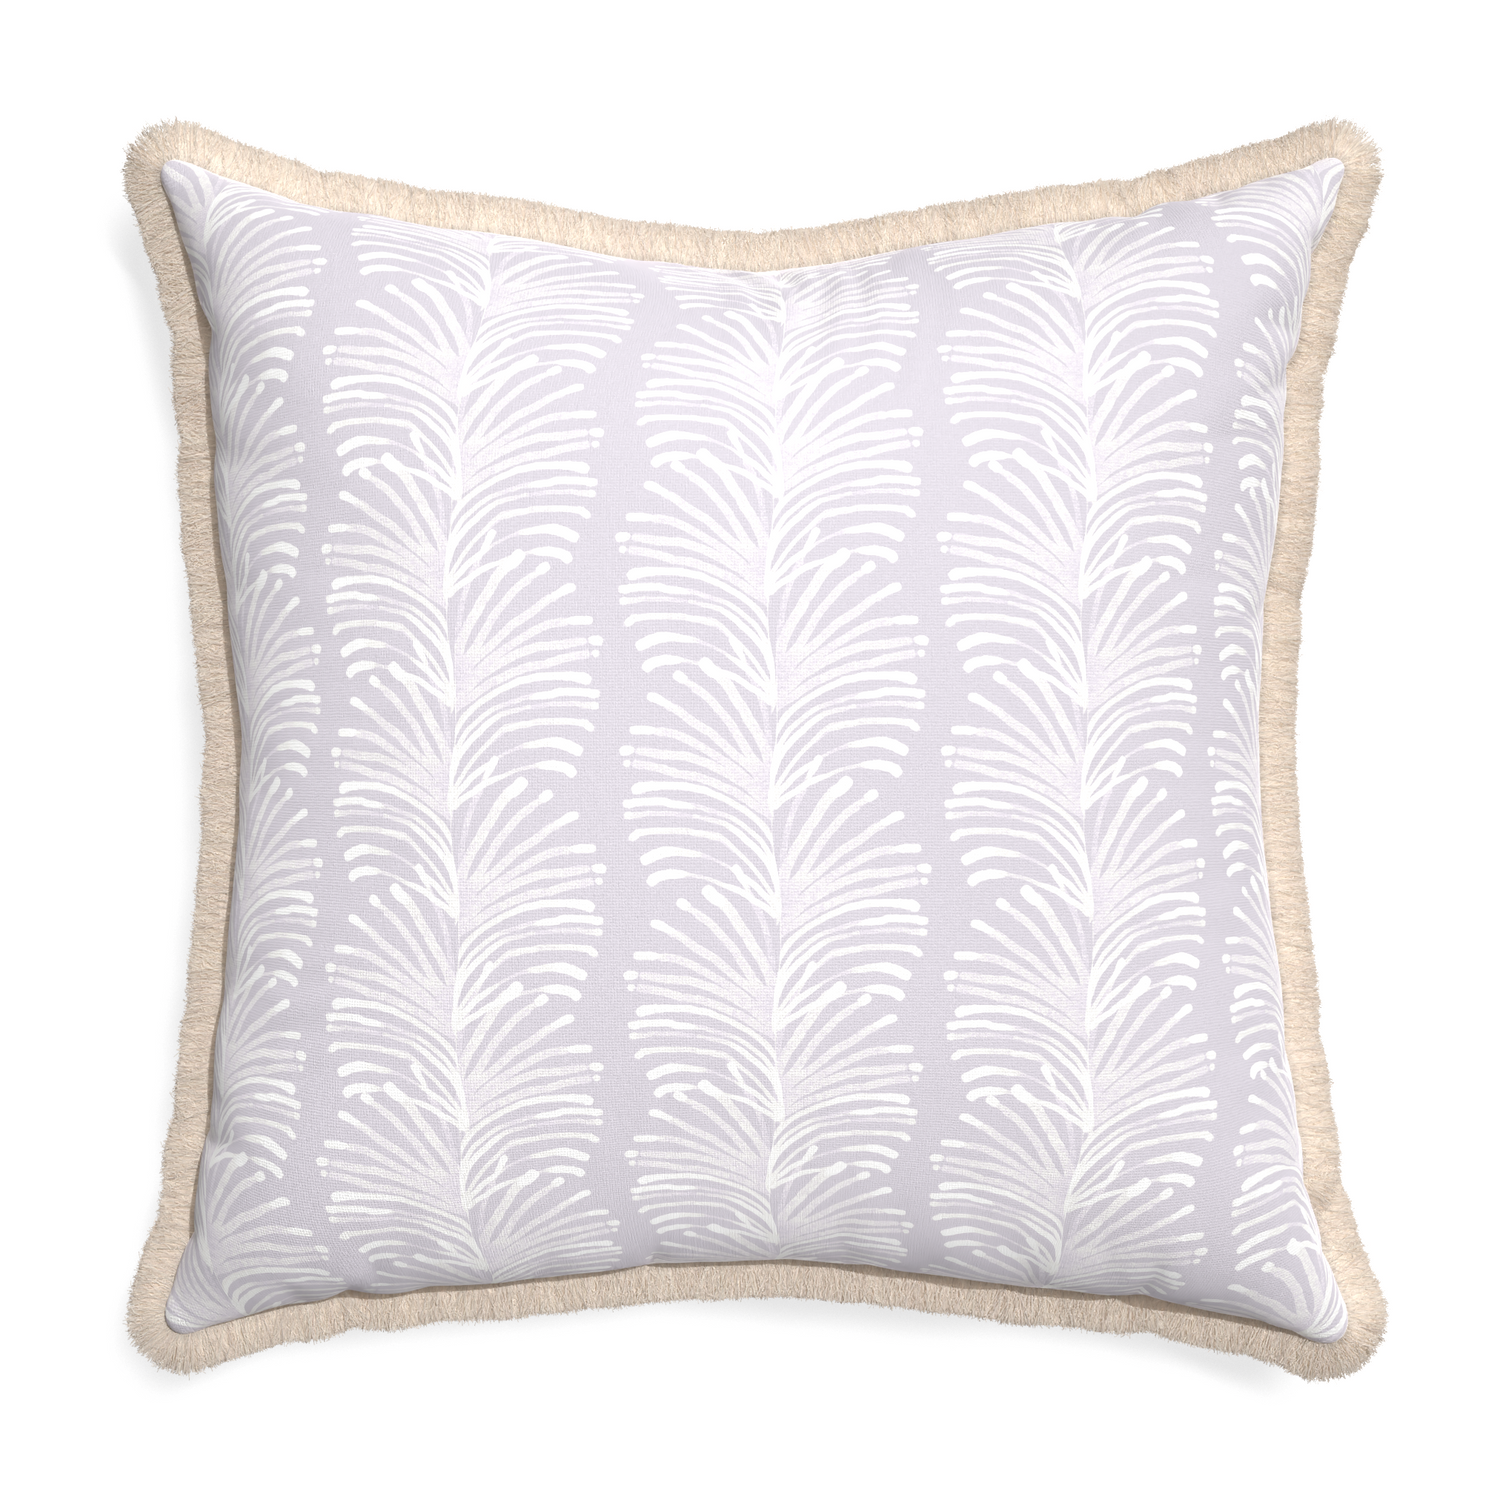 Euro-sham emma lavender custom pillow with cream fringe on white background